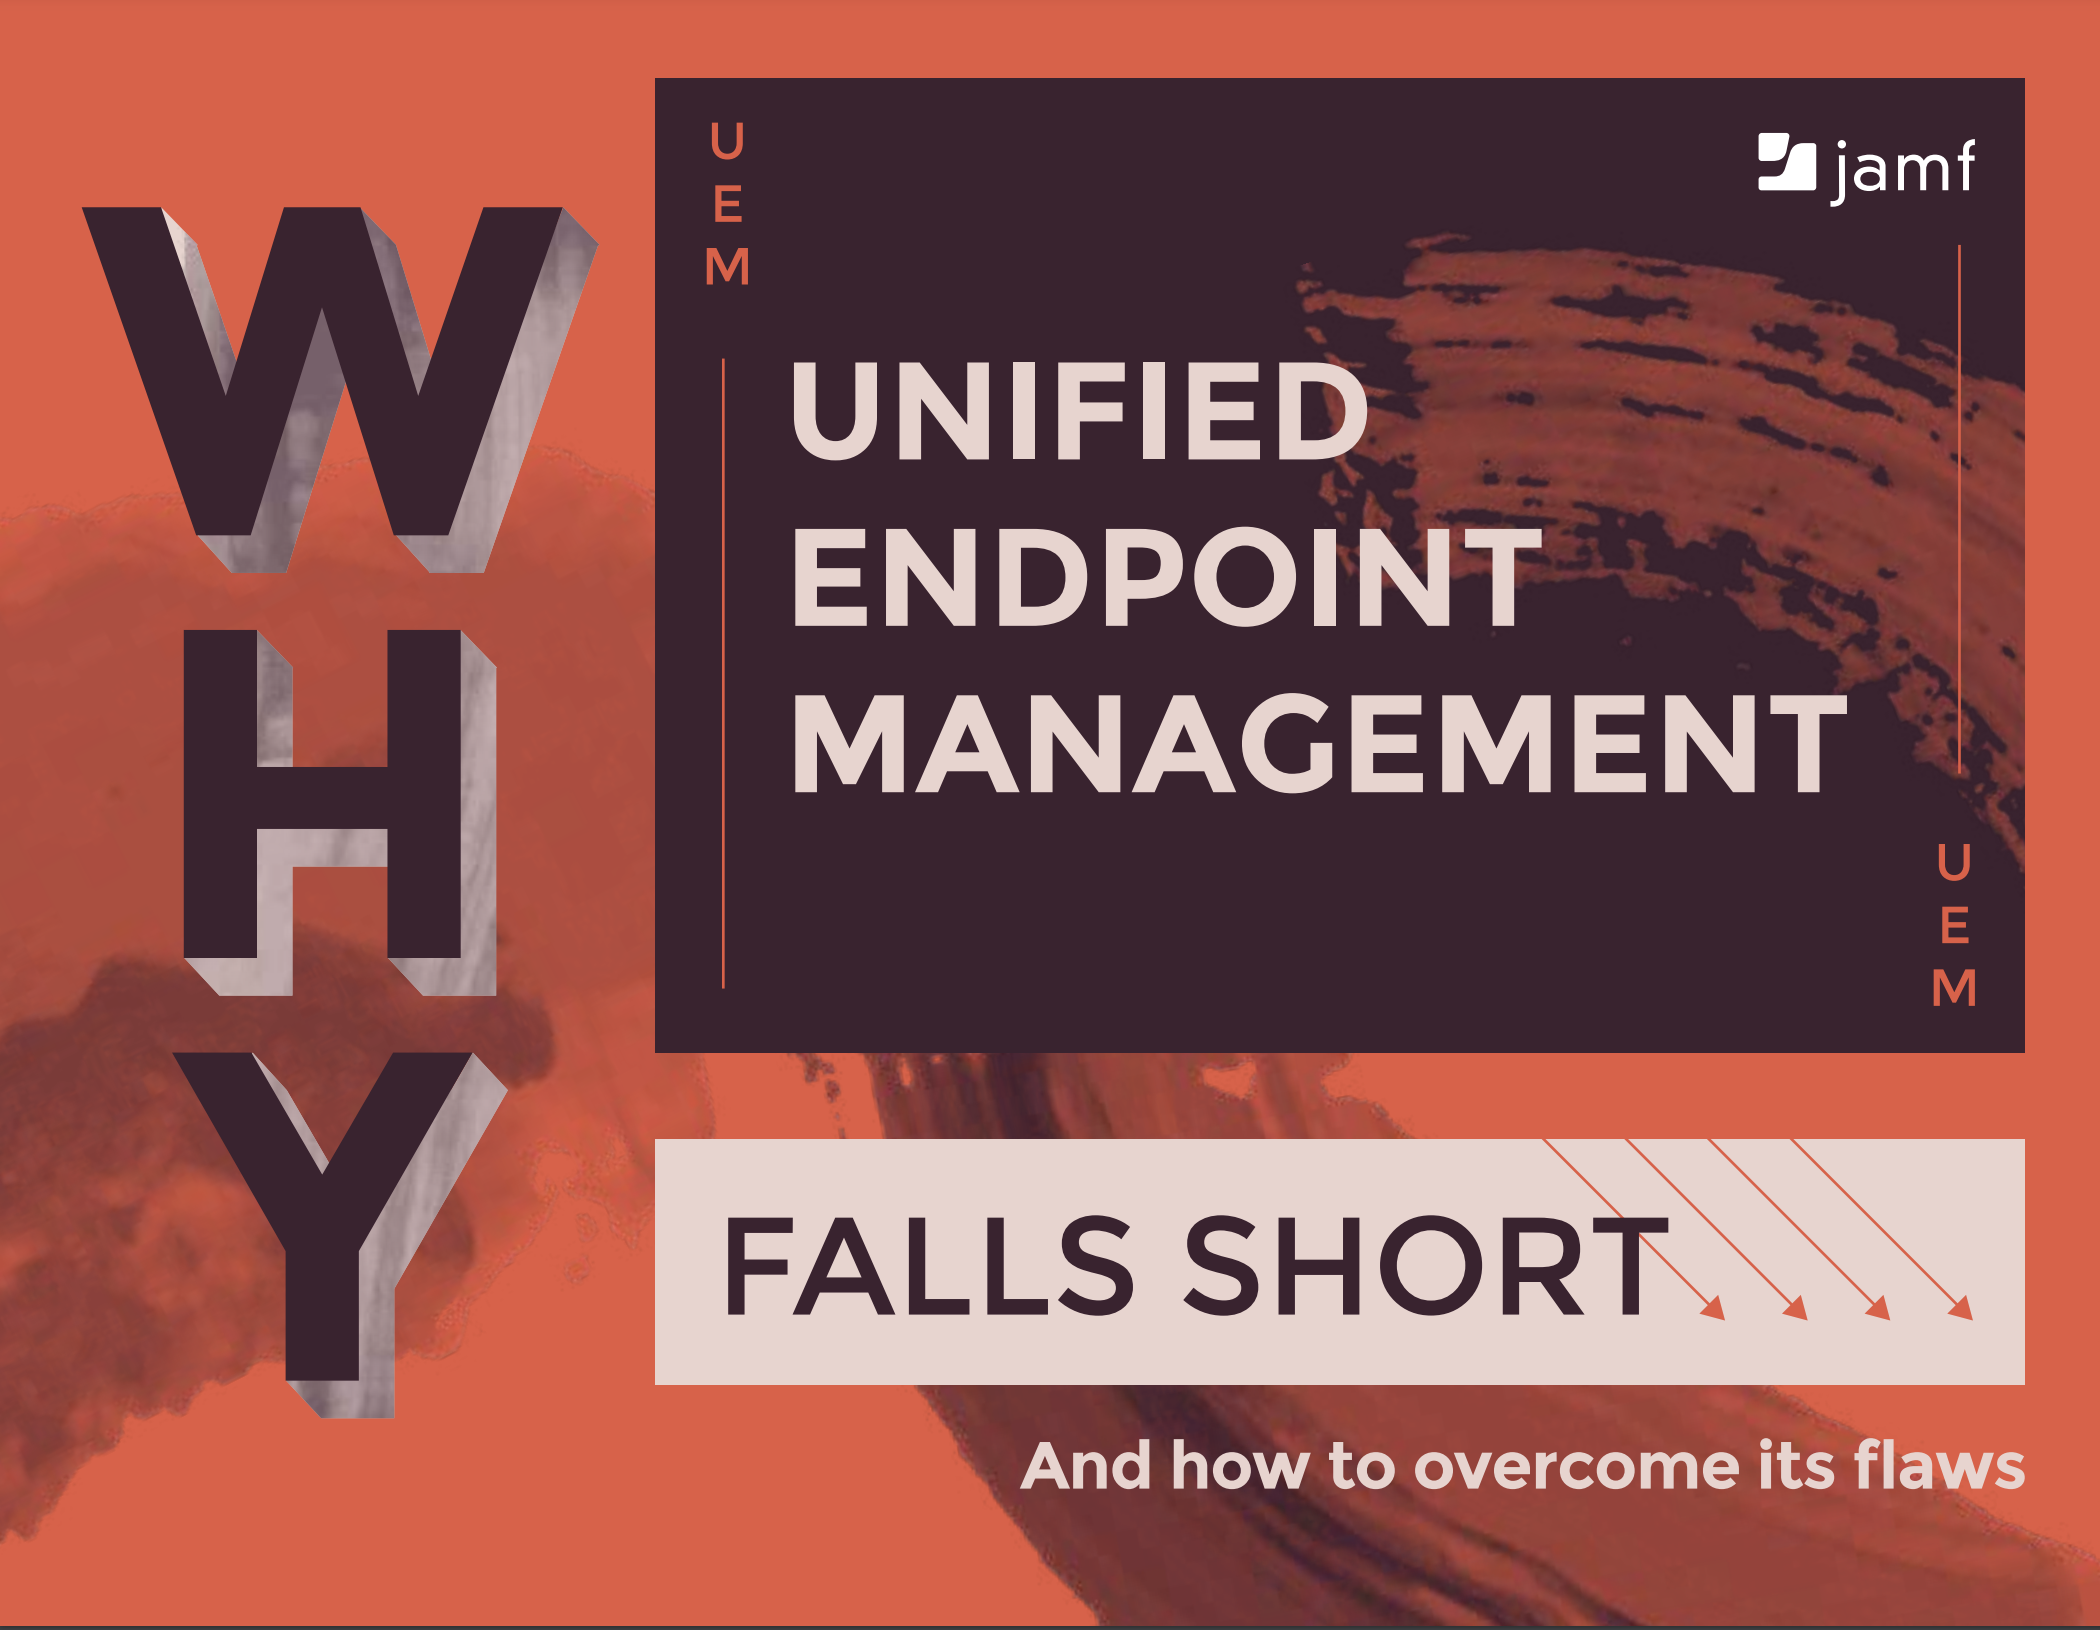 Why UEM falls short